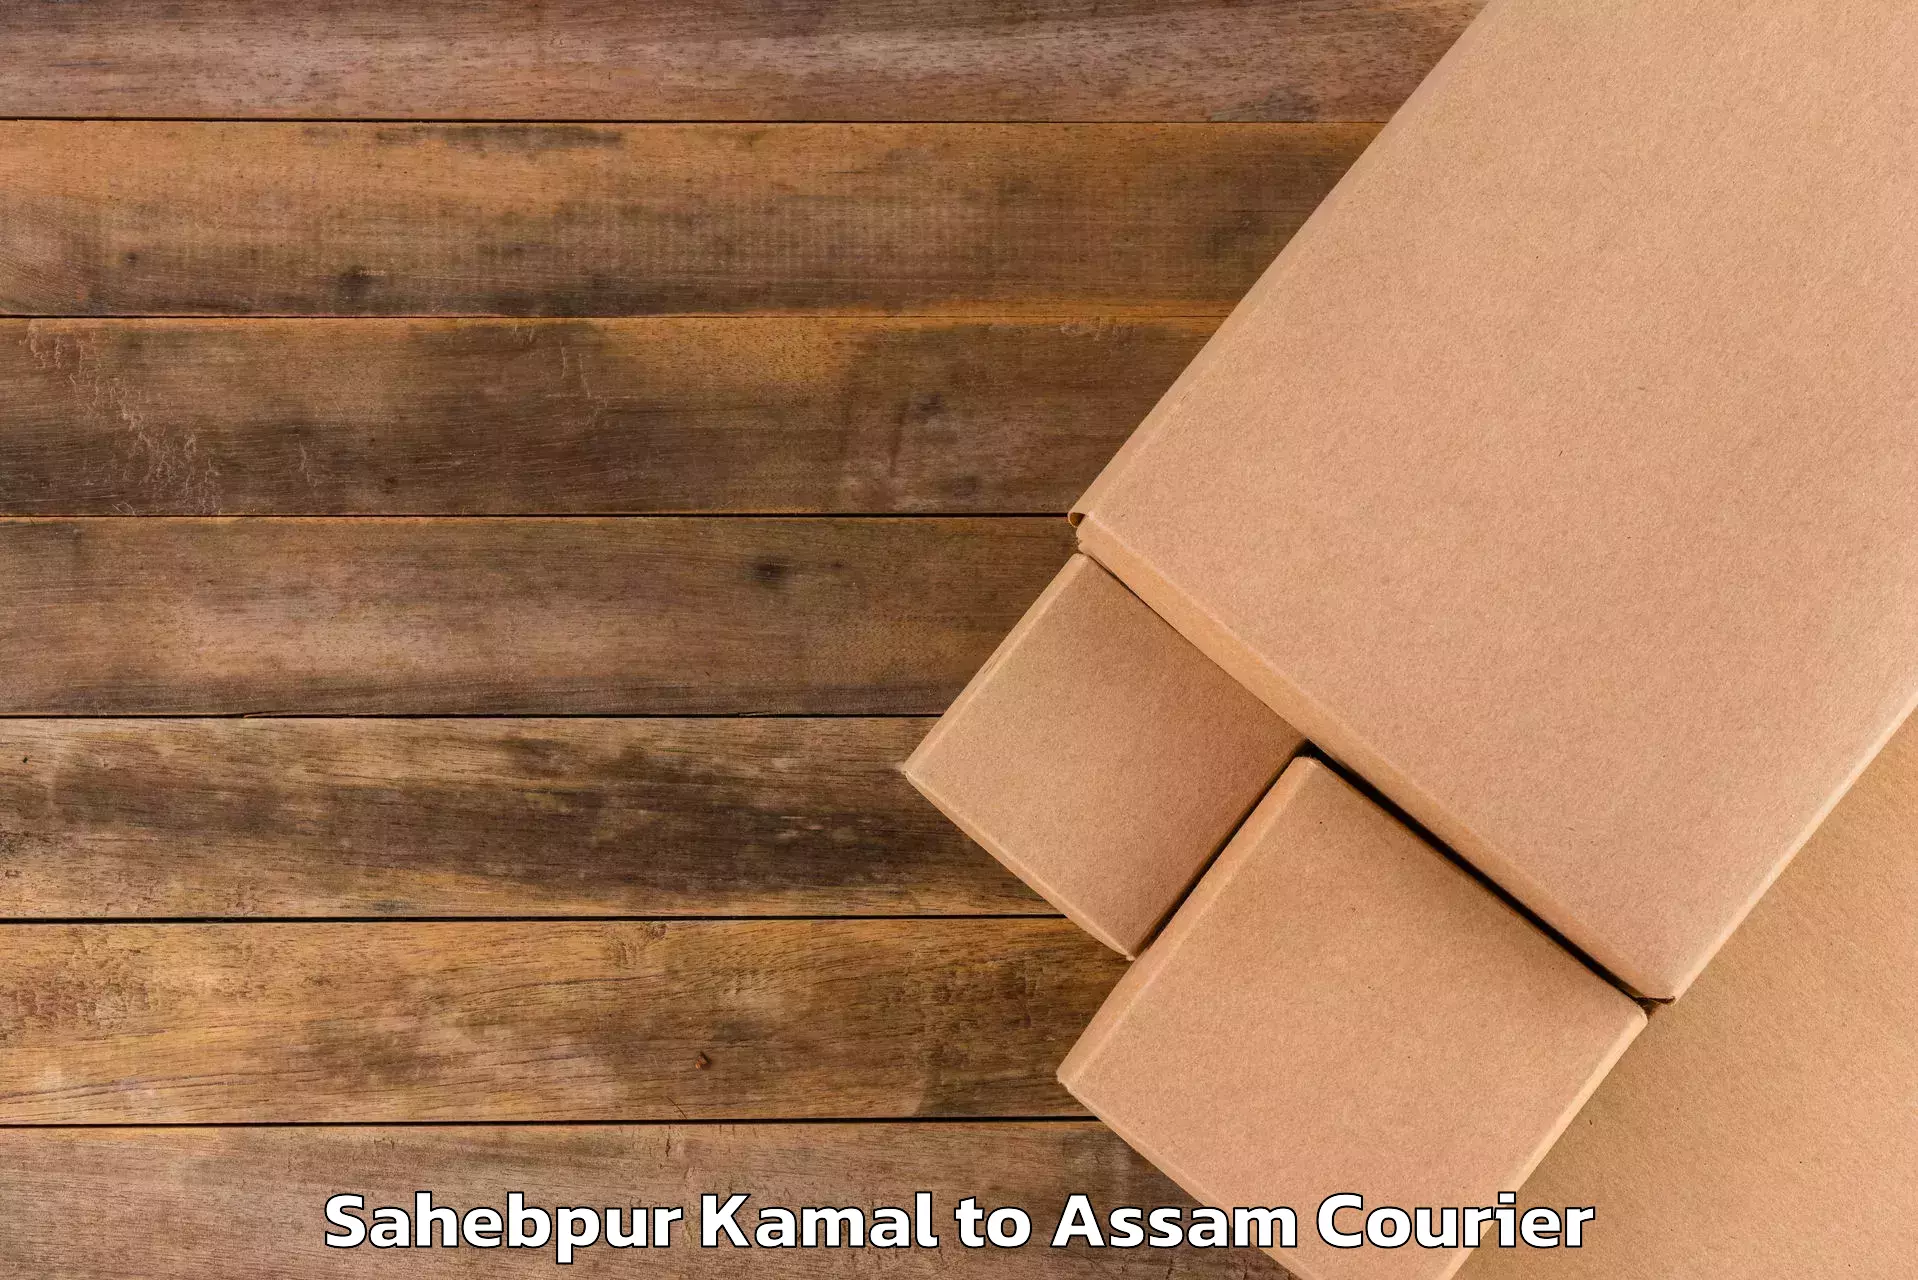 Direct baggage courier Sahebpur Kamal to Haflong